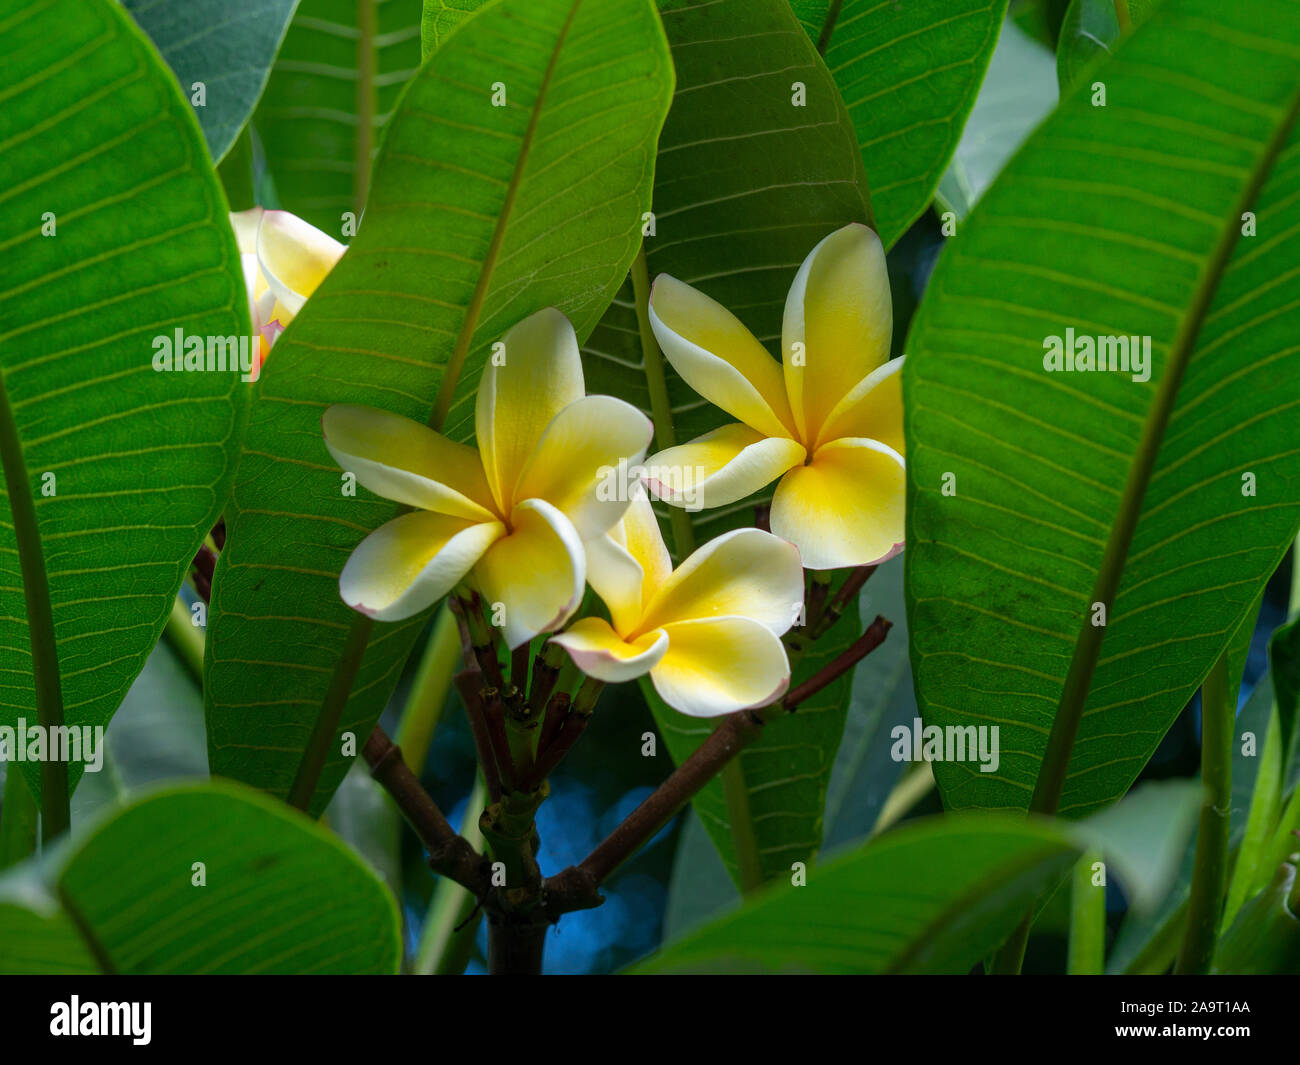 Nahaufnahme der hübschen frangipani Blüten mit gelben und weißen Blüten und großen, grünen Blätter Stockfoto